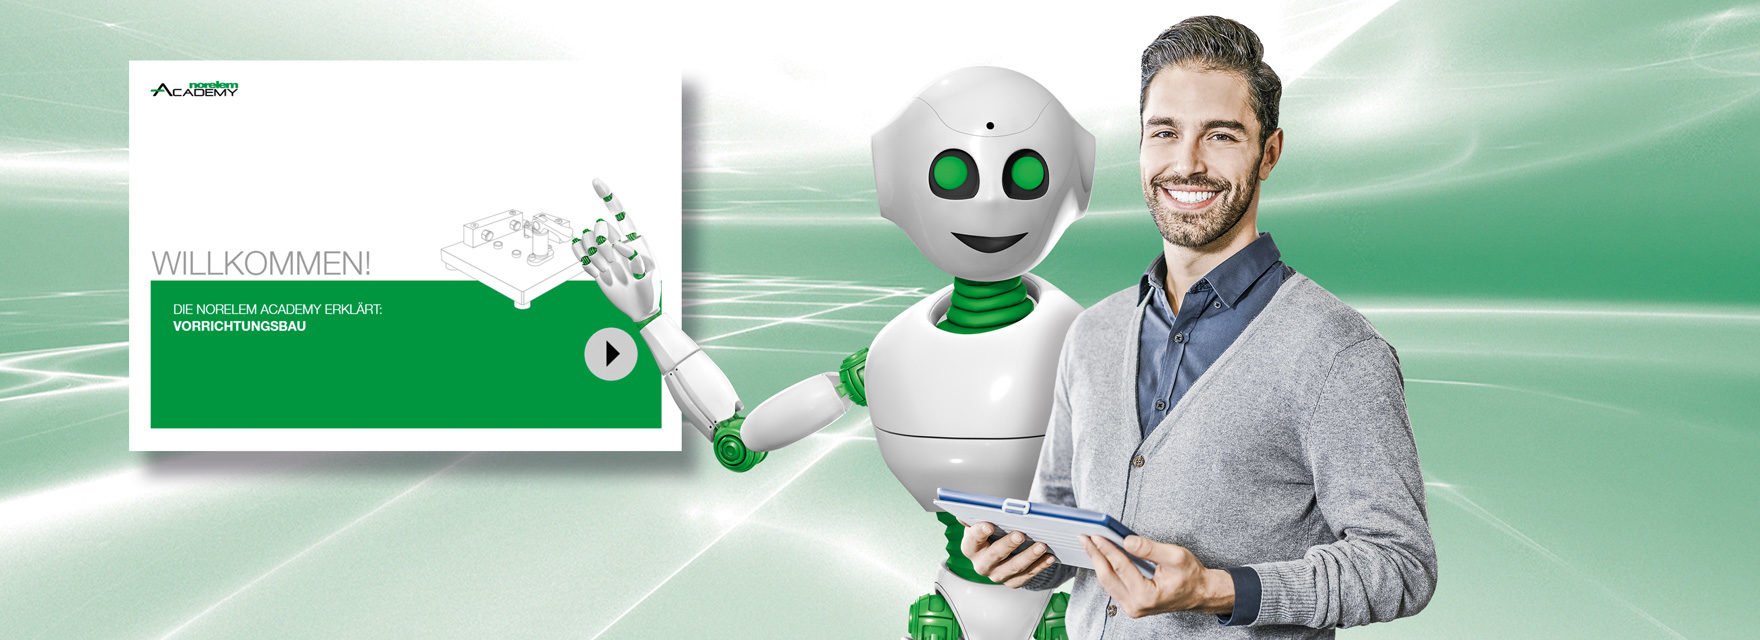 norelem Roboter zeigt auf Bild hinter sich, recht daneben steht ein Mann mit Tablet